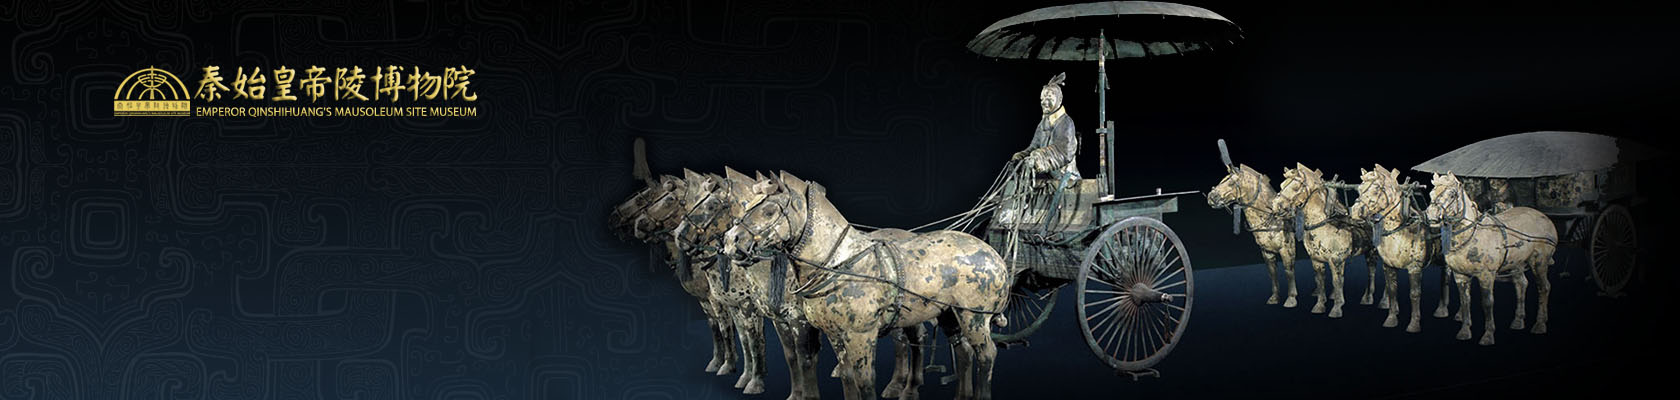 青銅之冠——秦始皇陵銅車馬